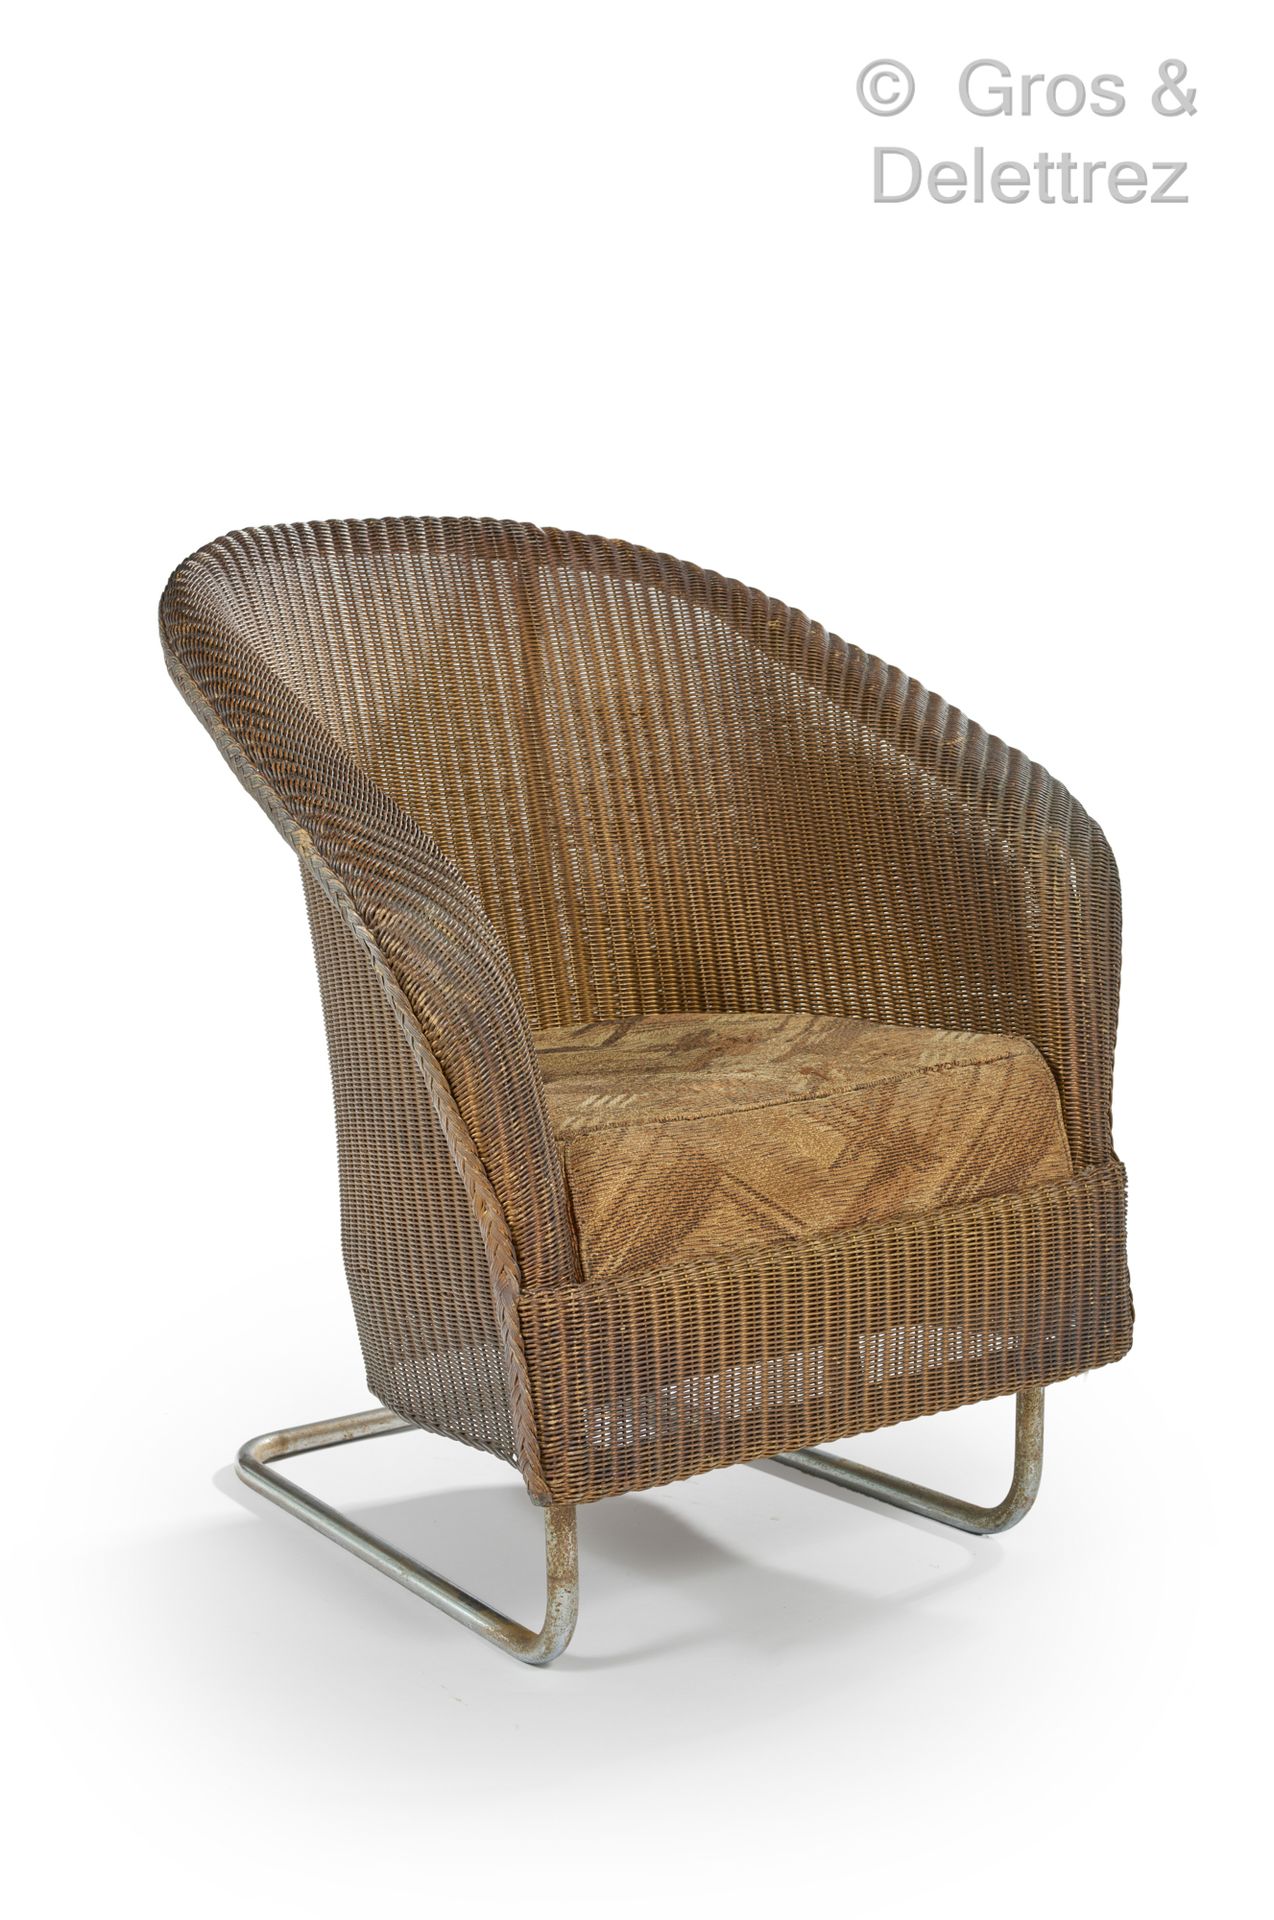 Null W.LUSTY & SONS，劳埃德织机家具，归于

藤制和镀铬管状金属扶手椅

约1930年

高：80厘米，宽：68厘米，深：68厘米